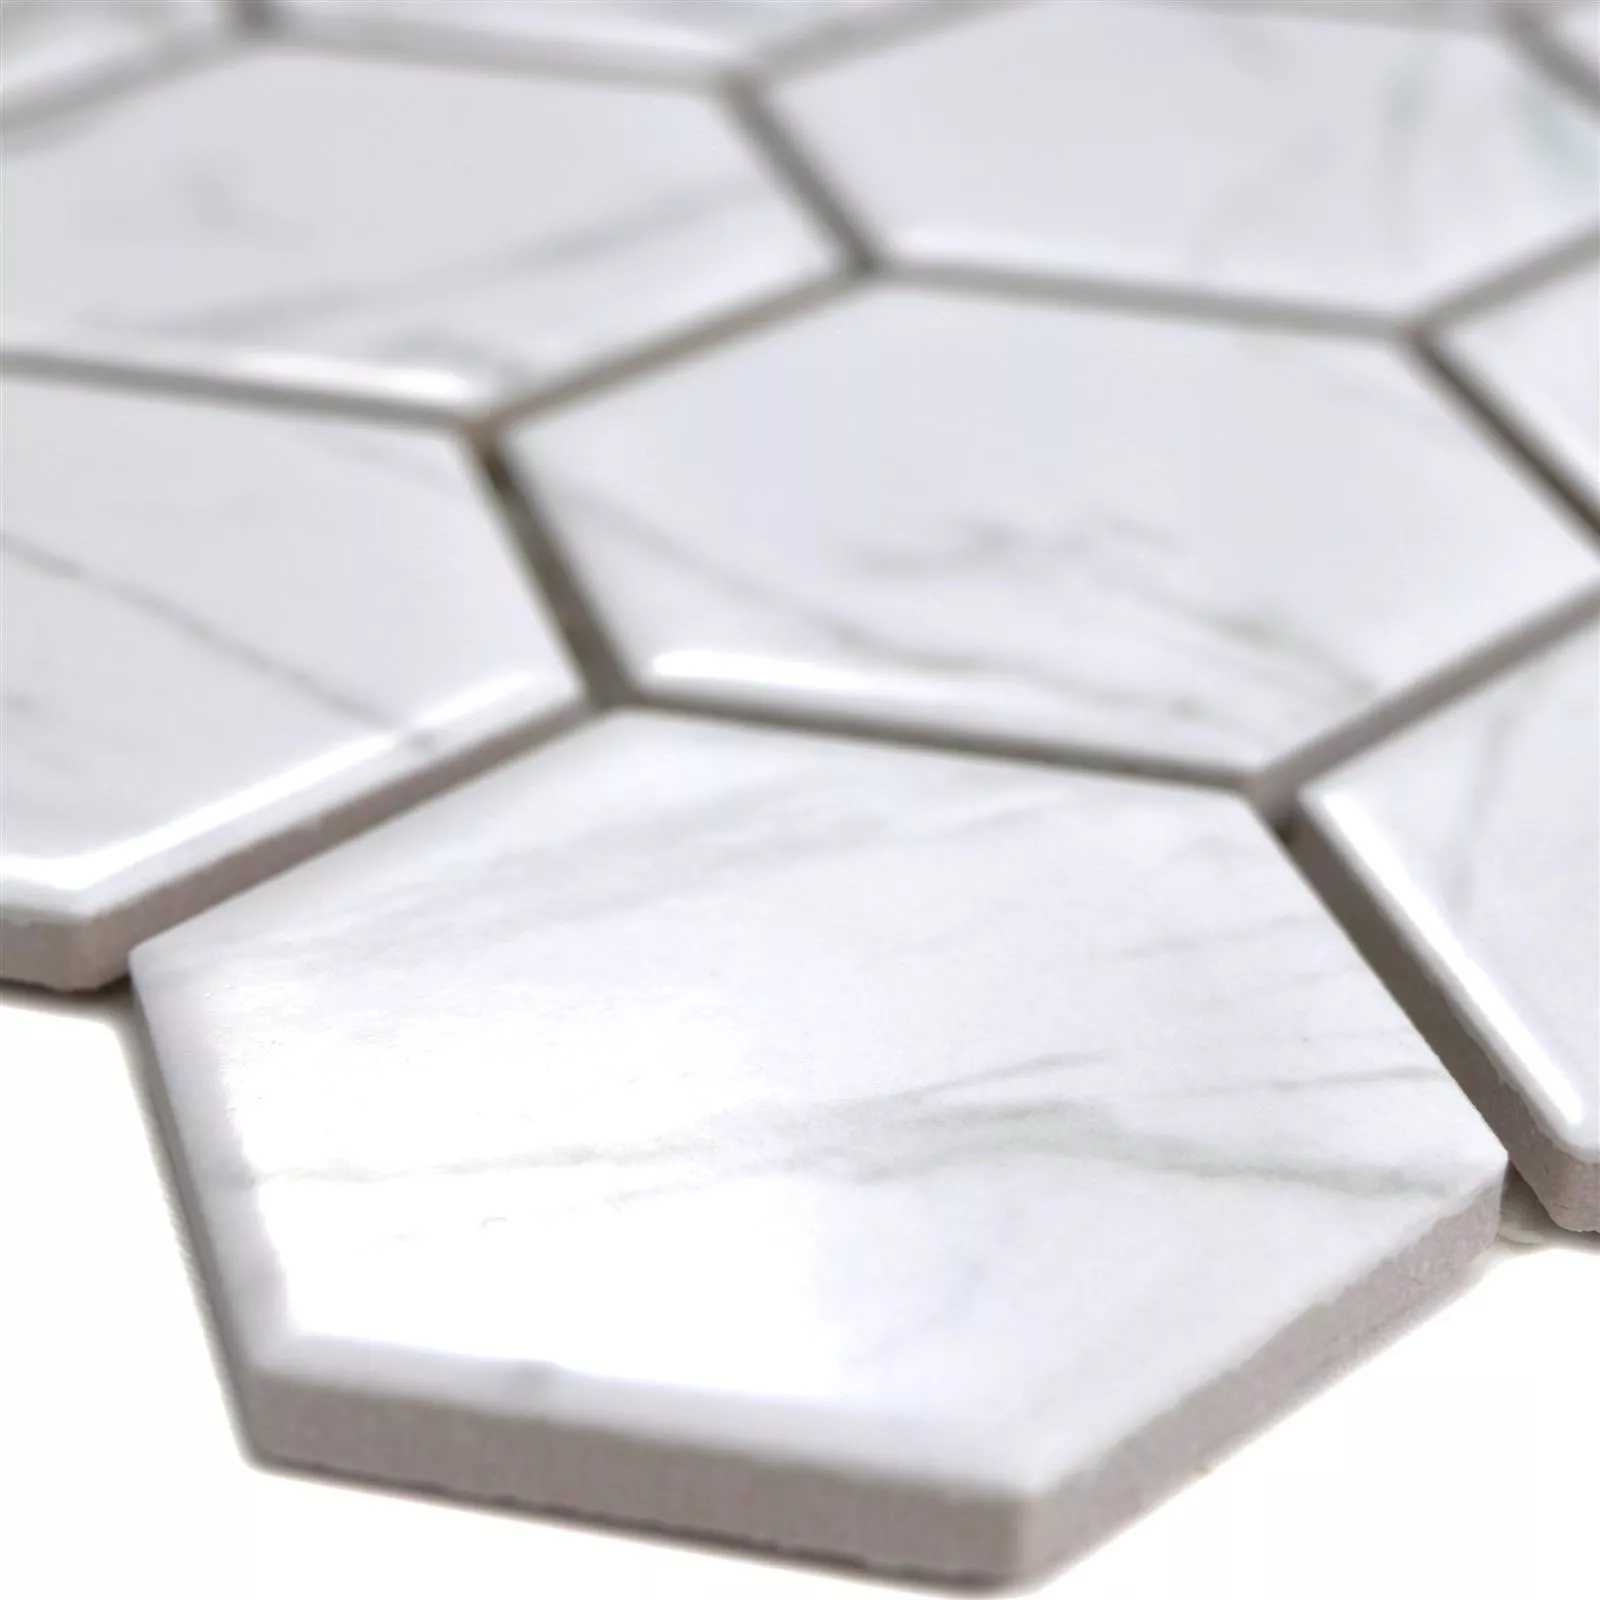 Sample Ceramic Mosaic Mozart Hexagon White Glossy